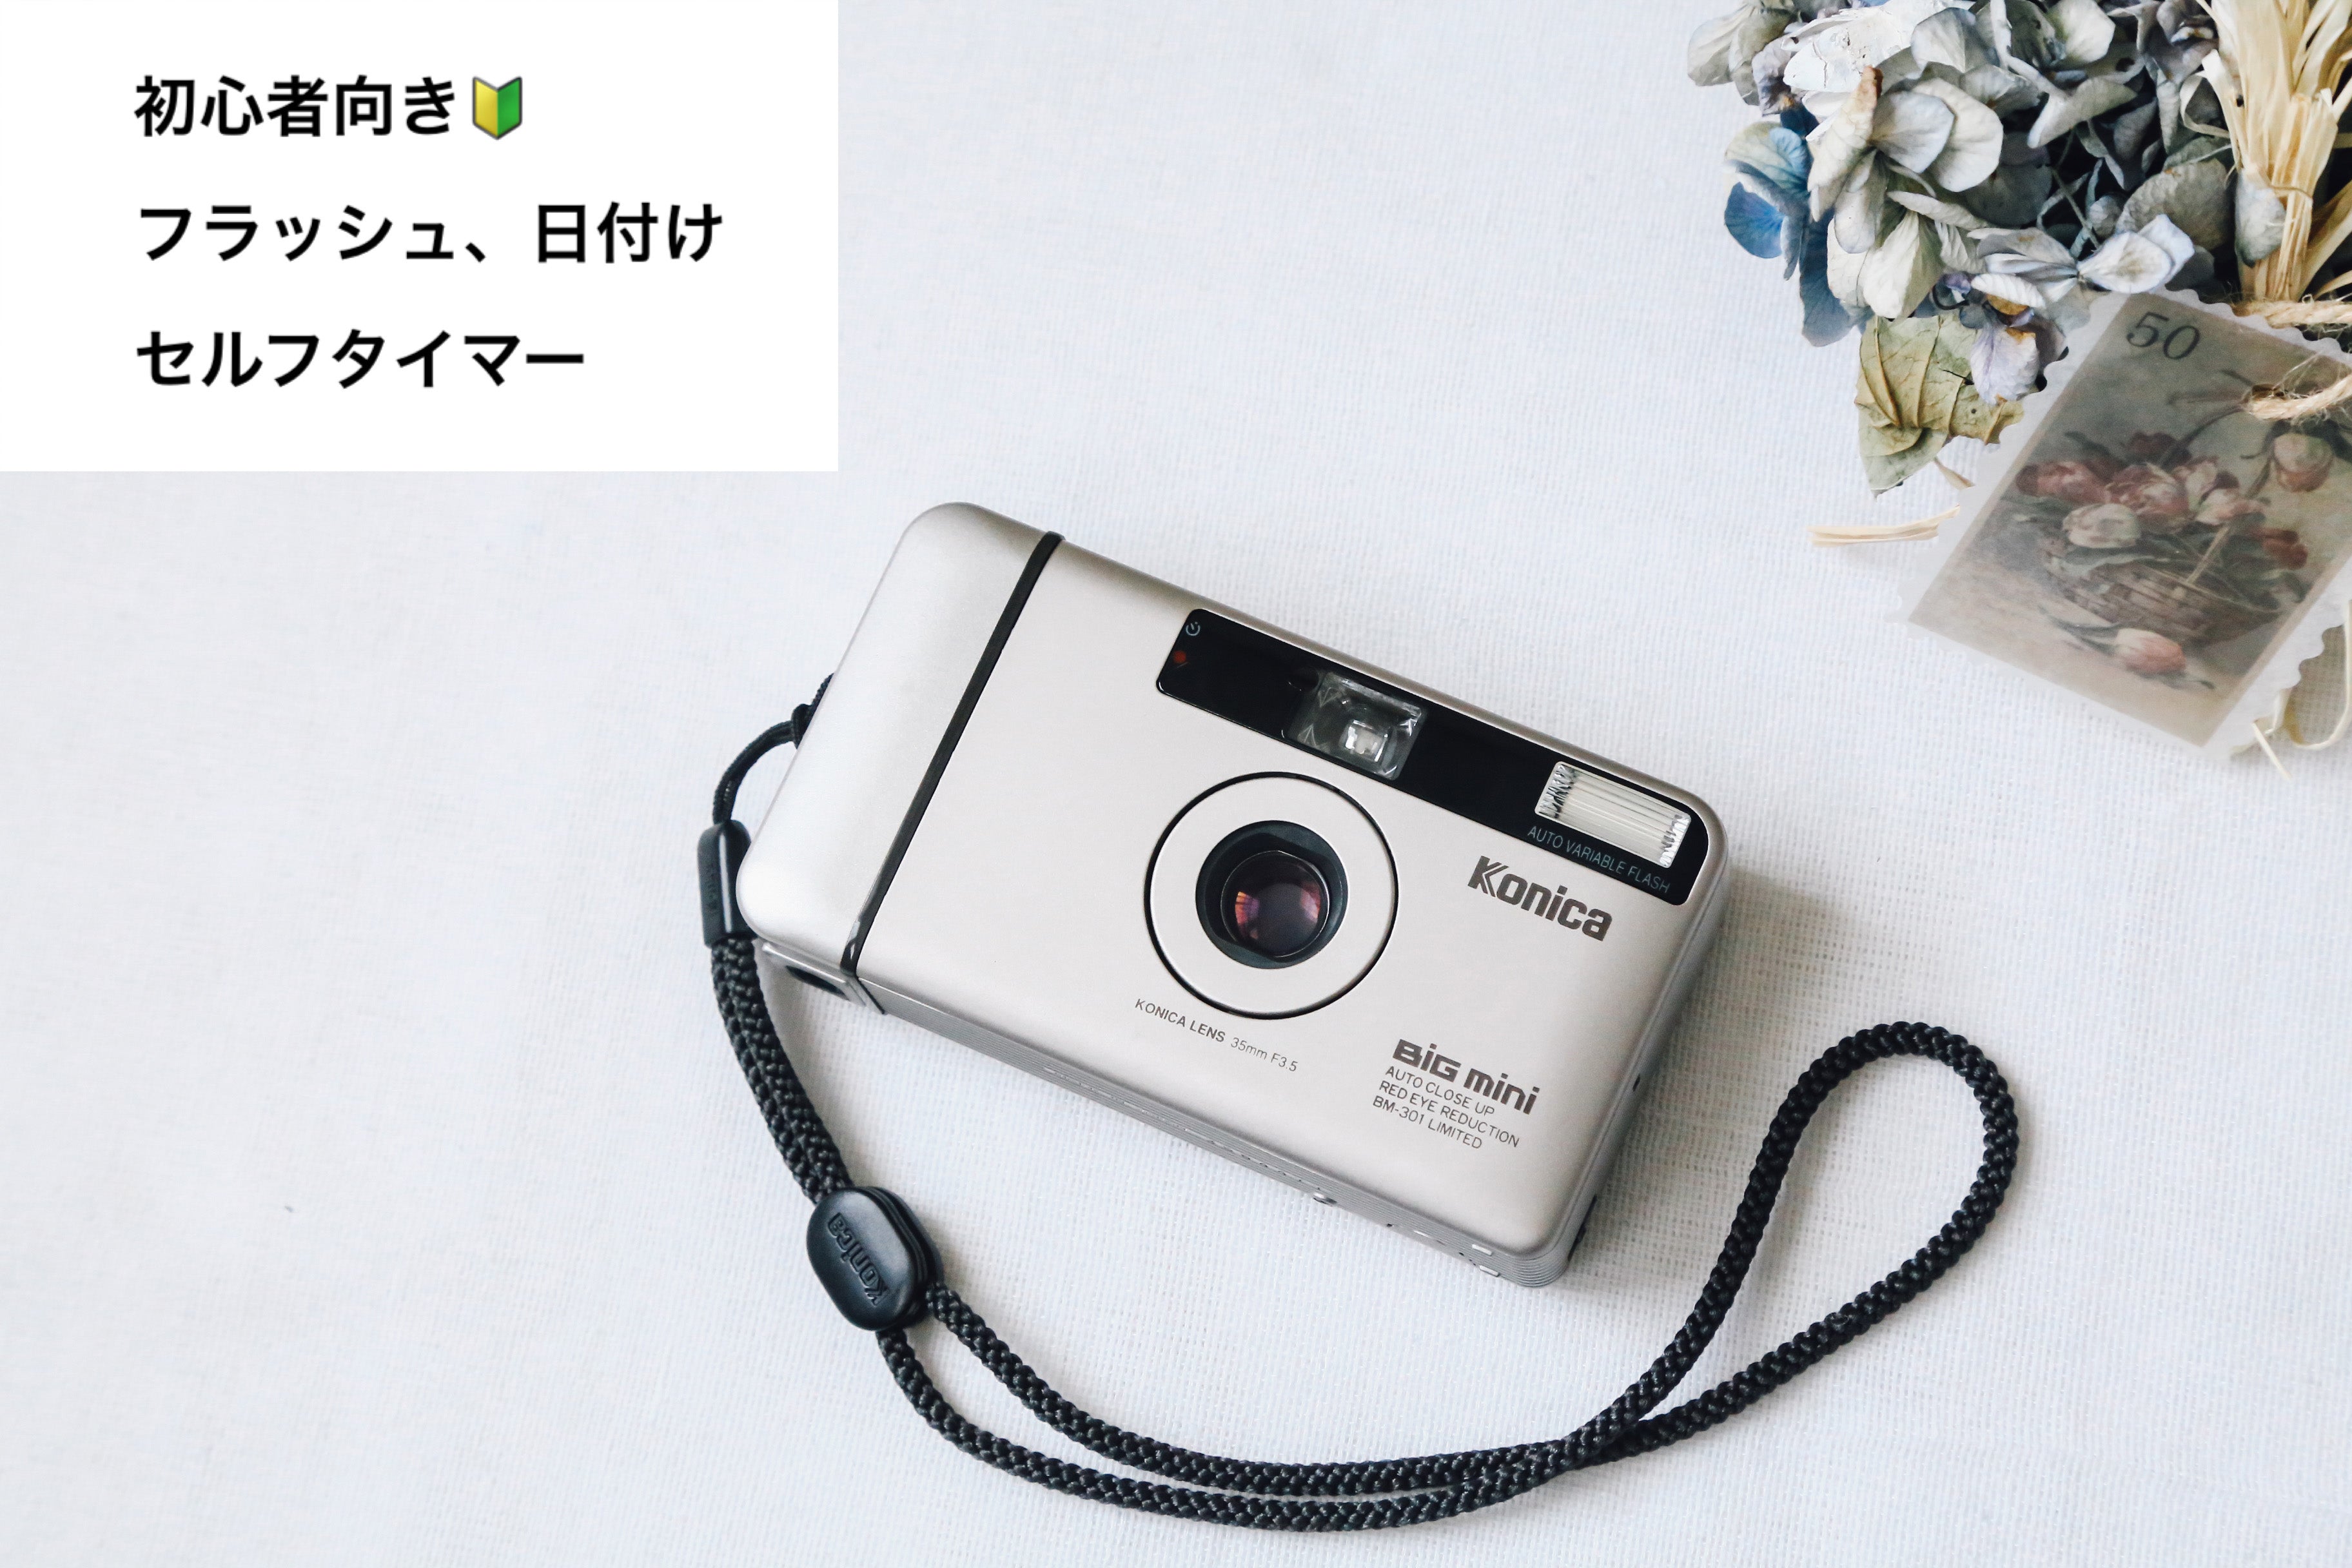 8,640円Konica コニカ Big mini BM-301 コンパクトフィルムカメラ